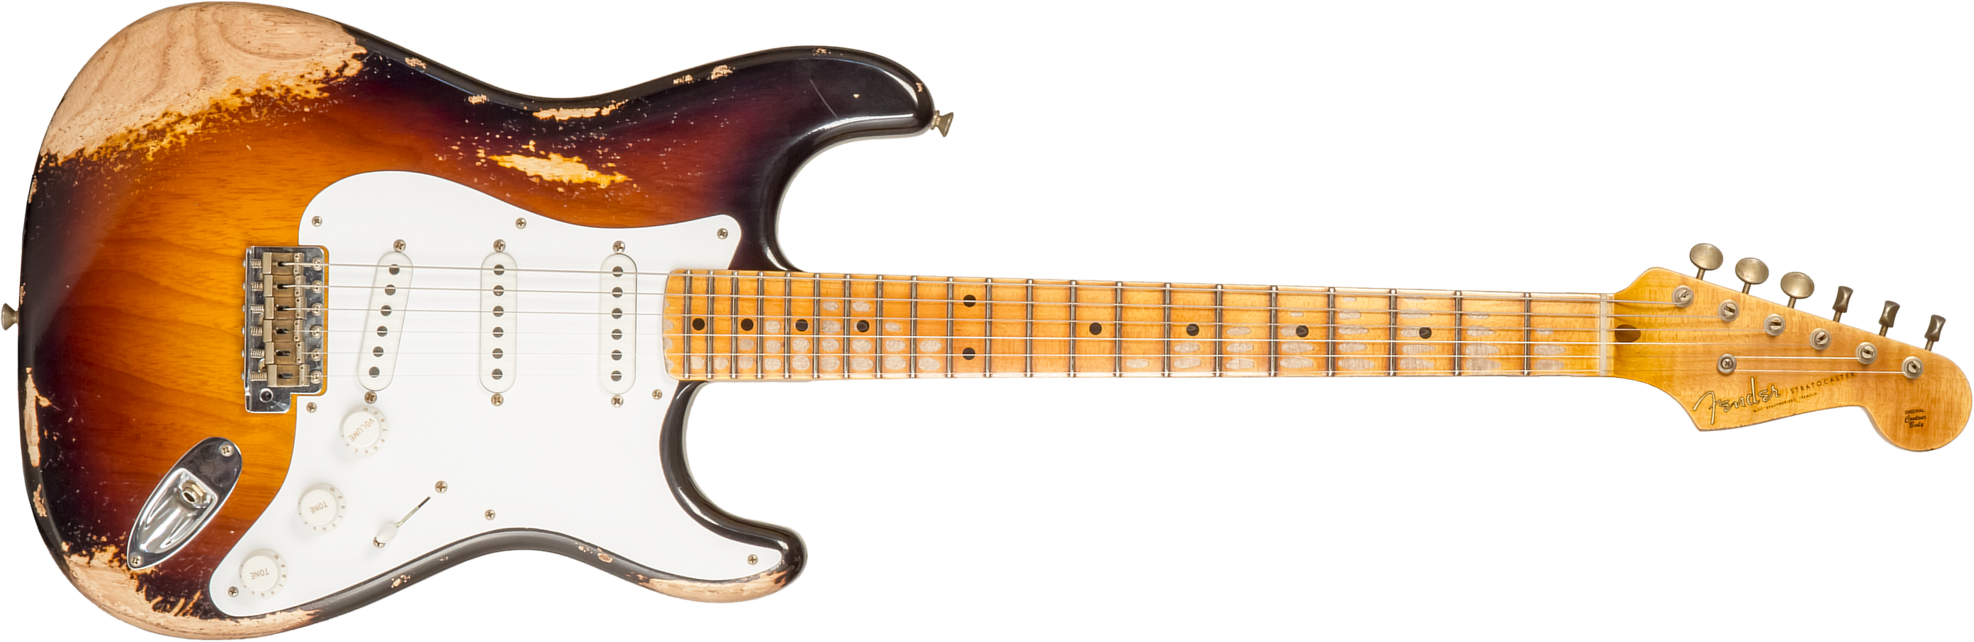 Fender Custom Shop Strat 1954 70th Anniv. 3s Trem Mn #xn4308 - Heavy Relic Wide Fade 2-color Sunburst - Guitare Électrique Forme Str - Main picture